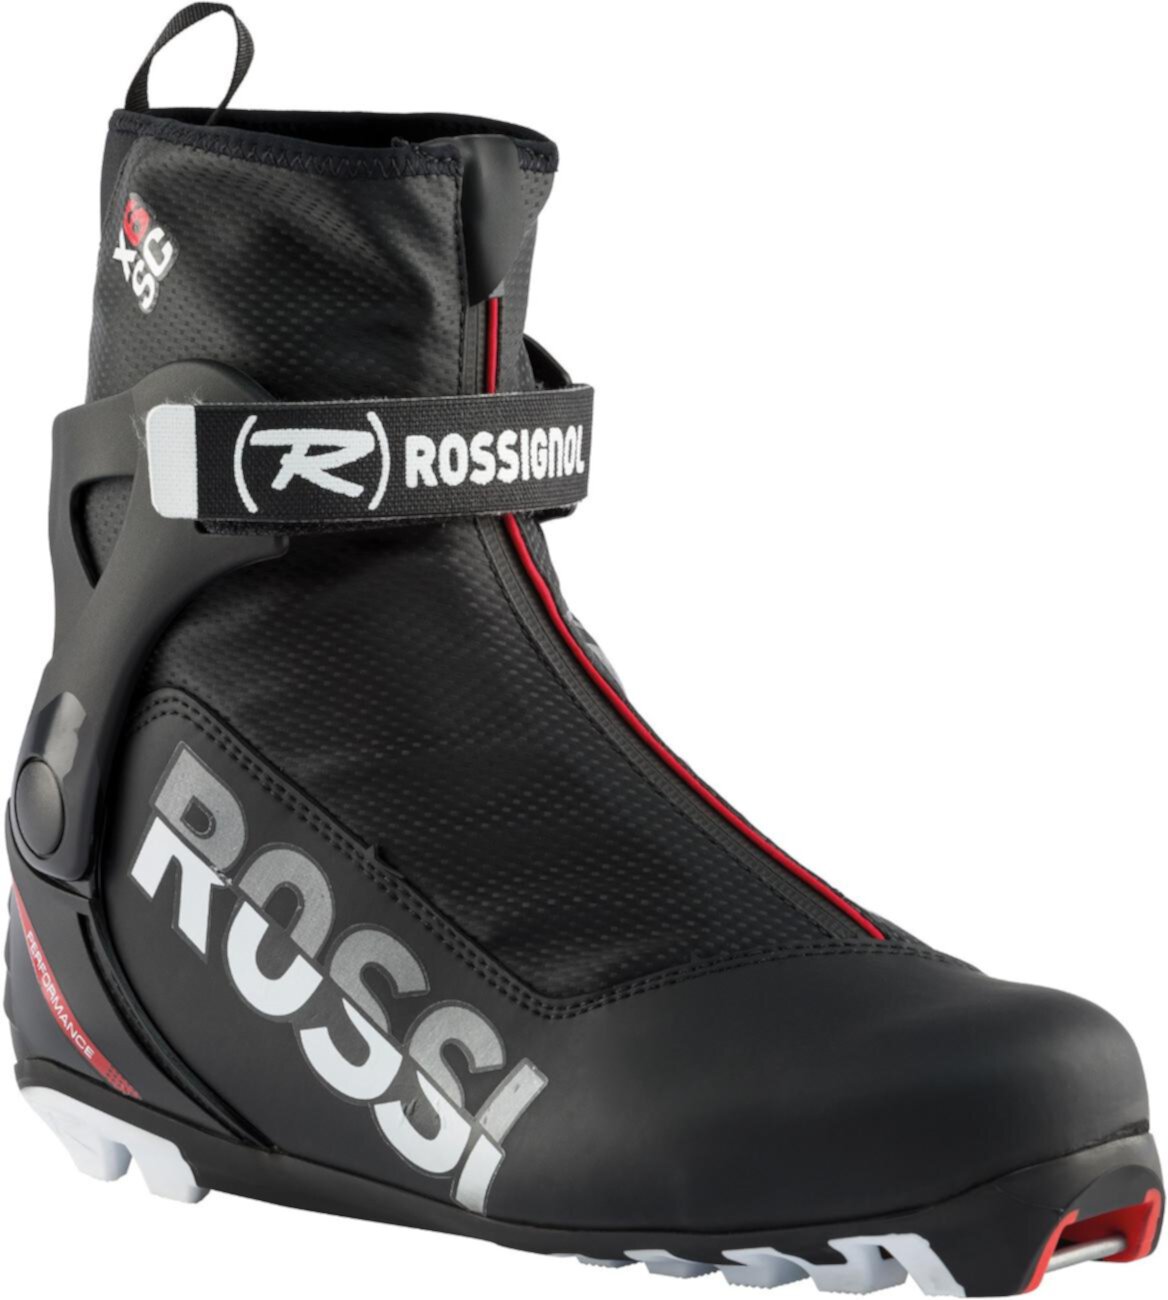 Ботинки для беговых лыж X-6 SC ROSSIGNOL